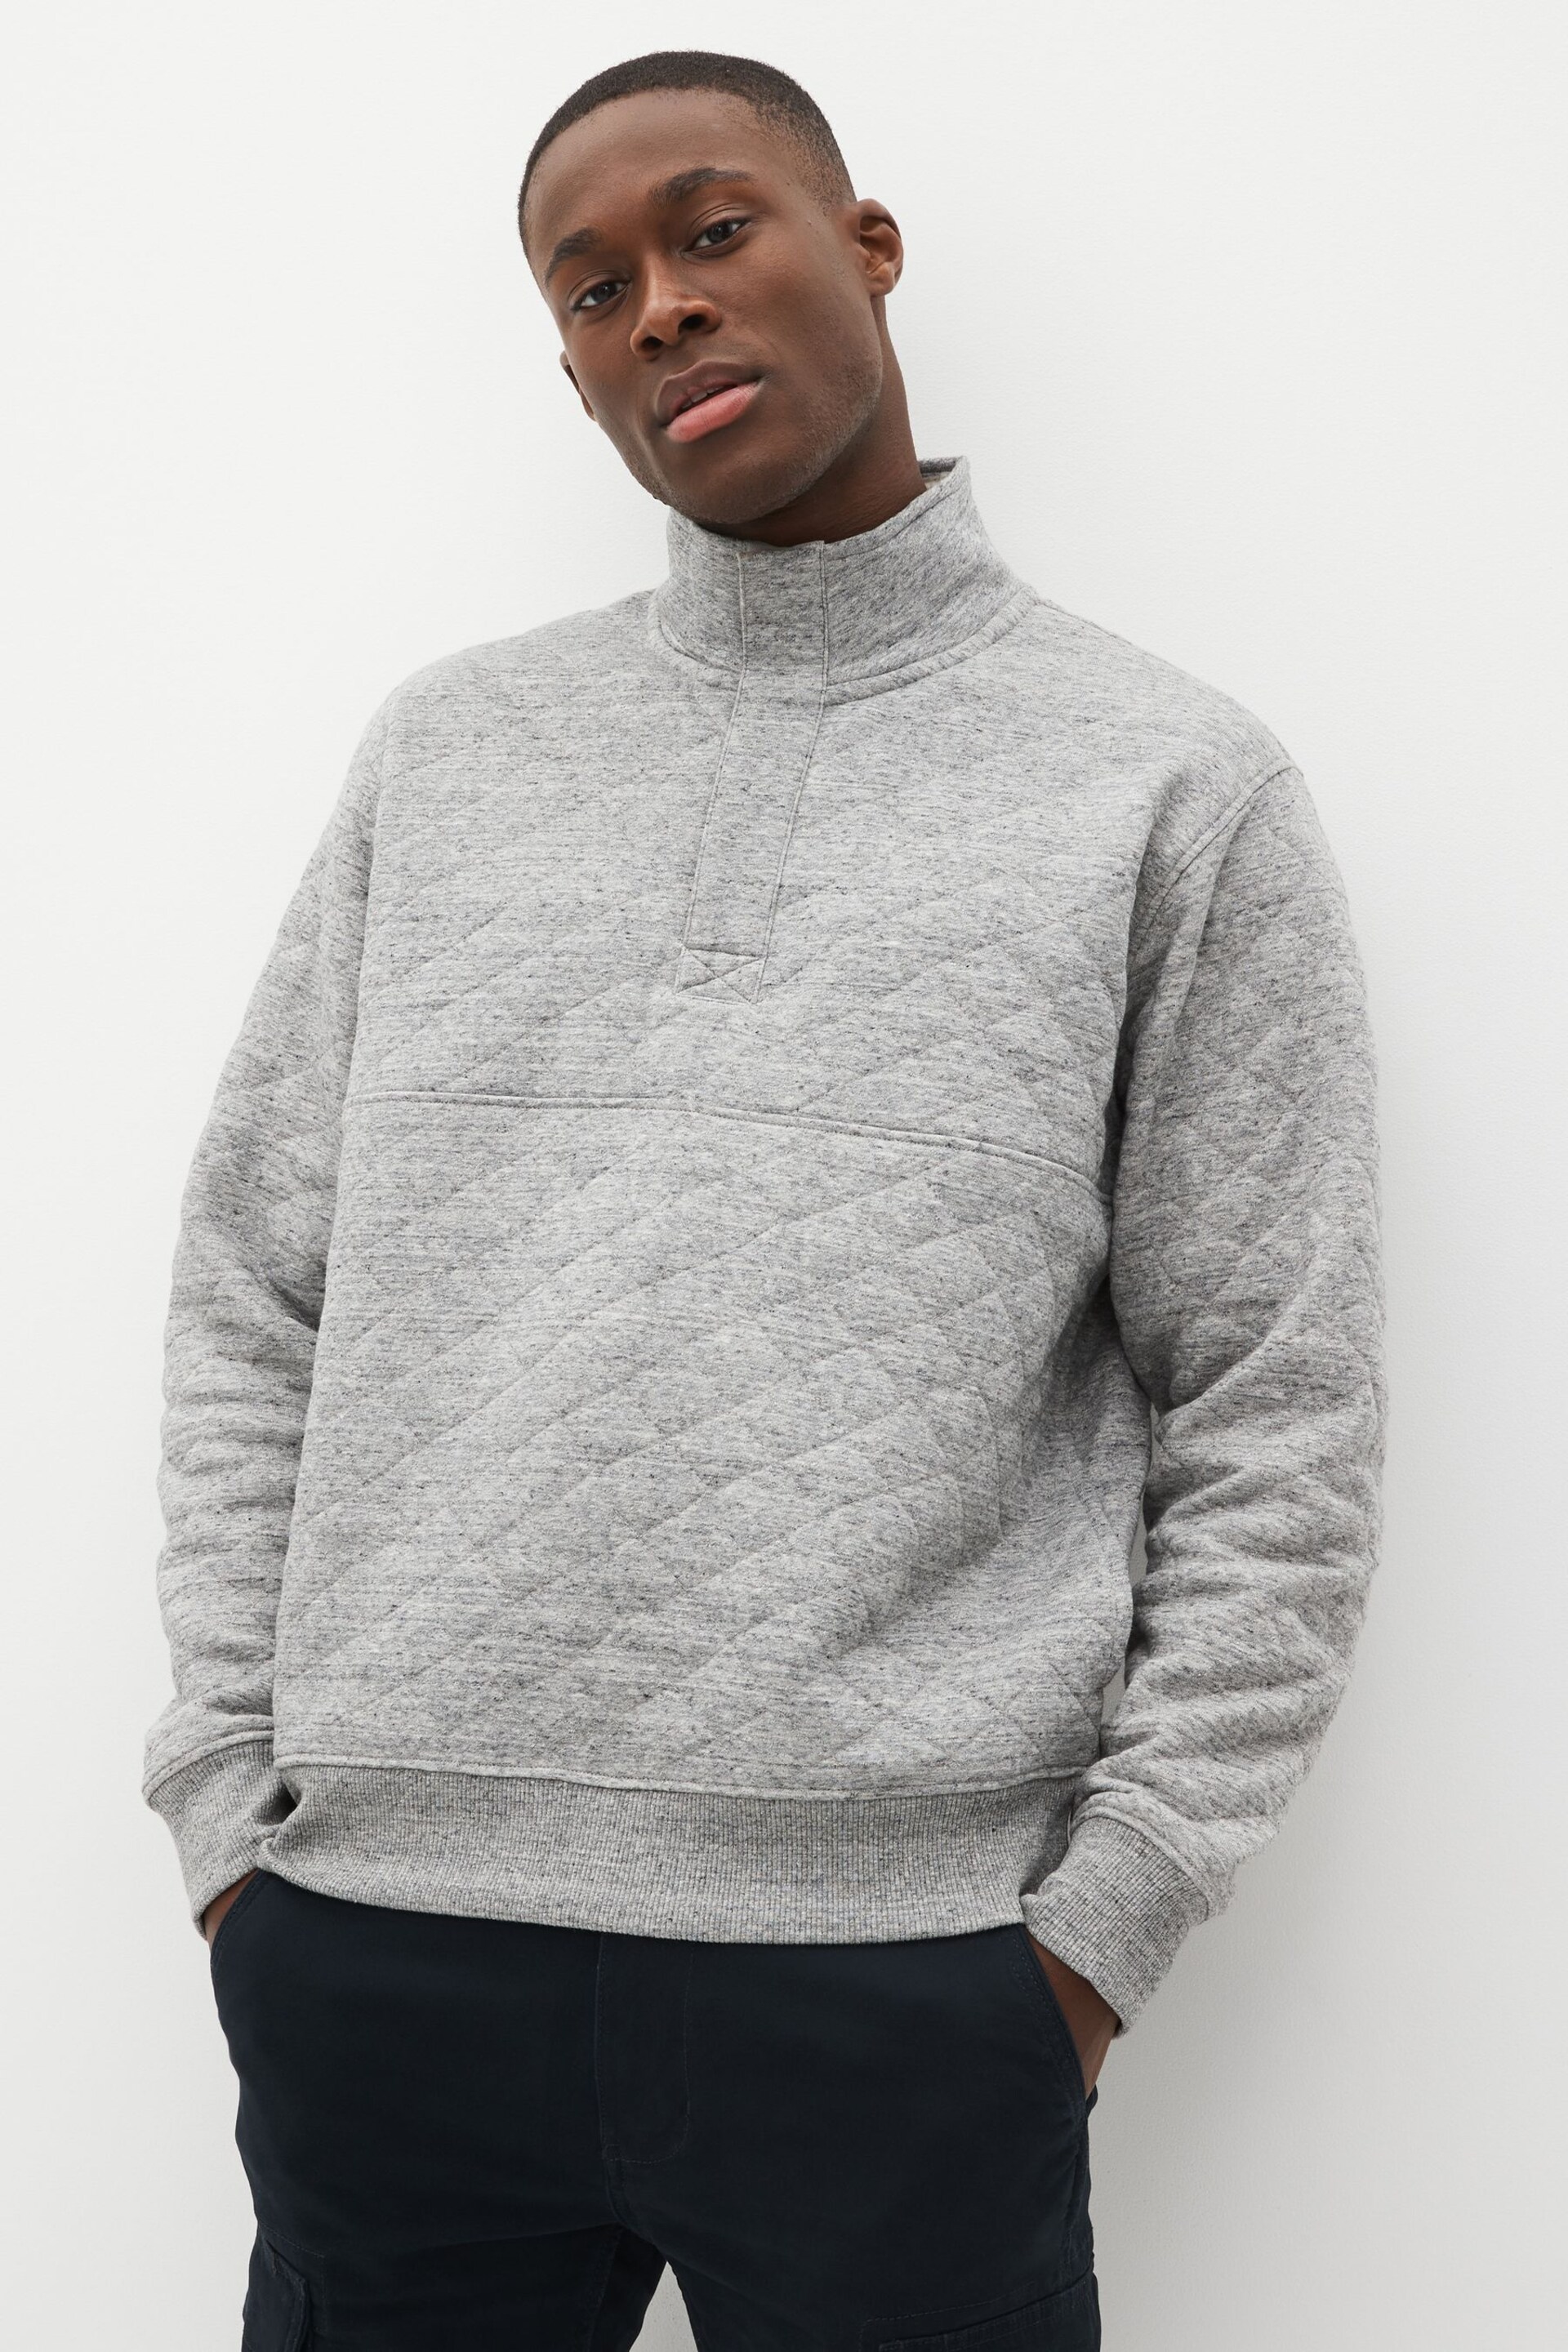 Grey Quilted Sweatshirt Hoodie - Image 1 of 8